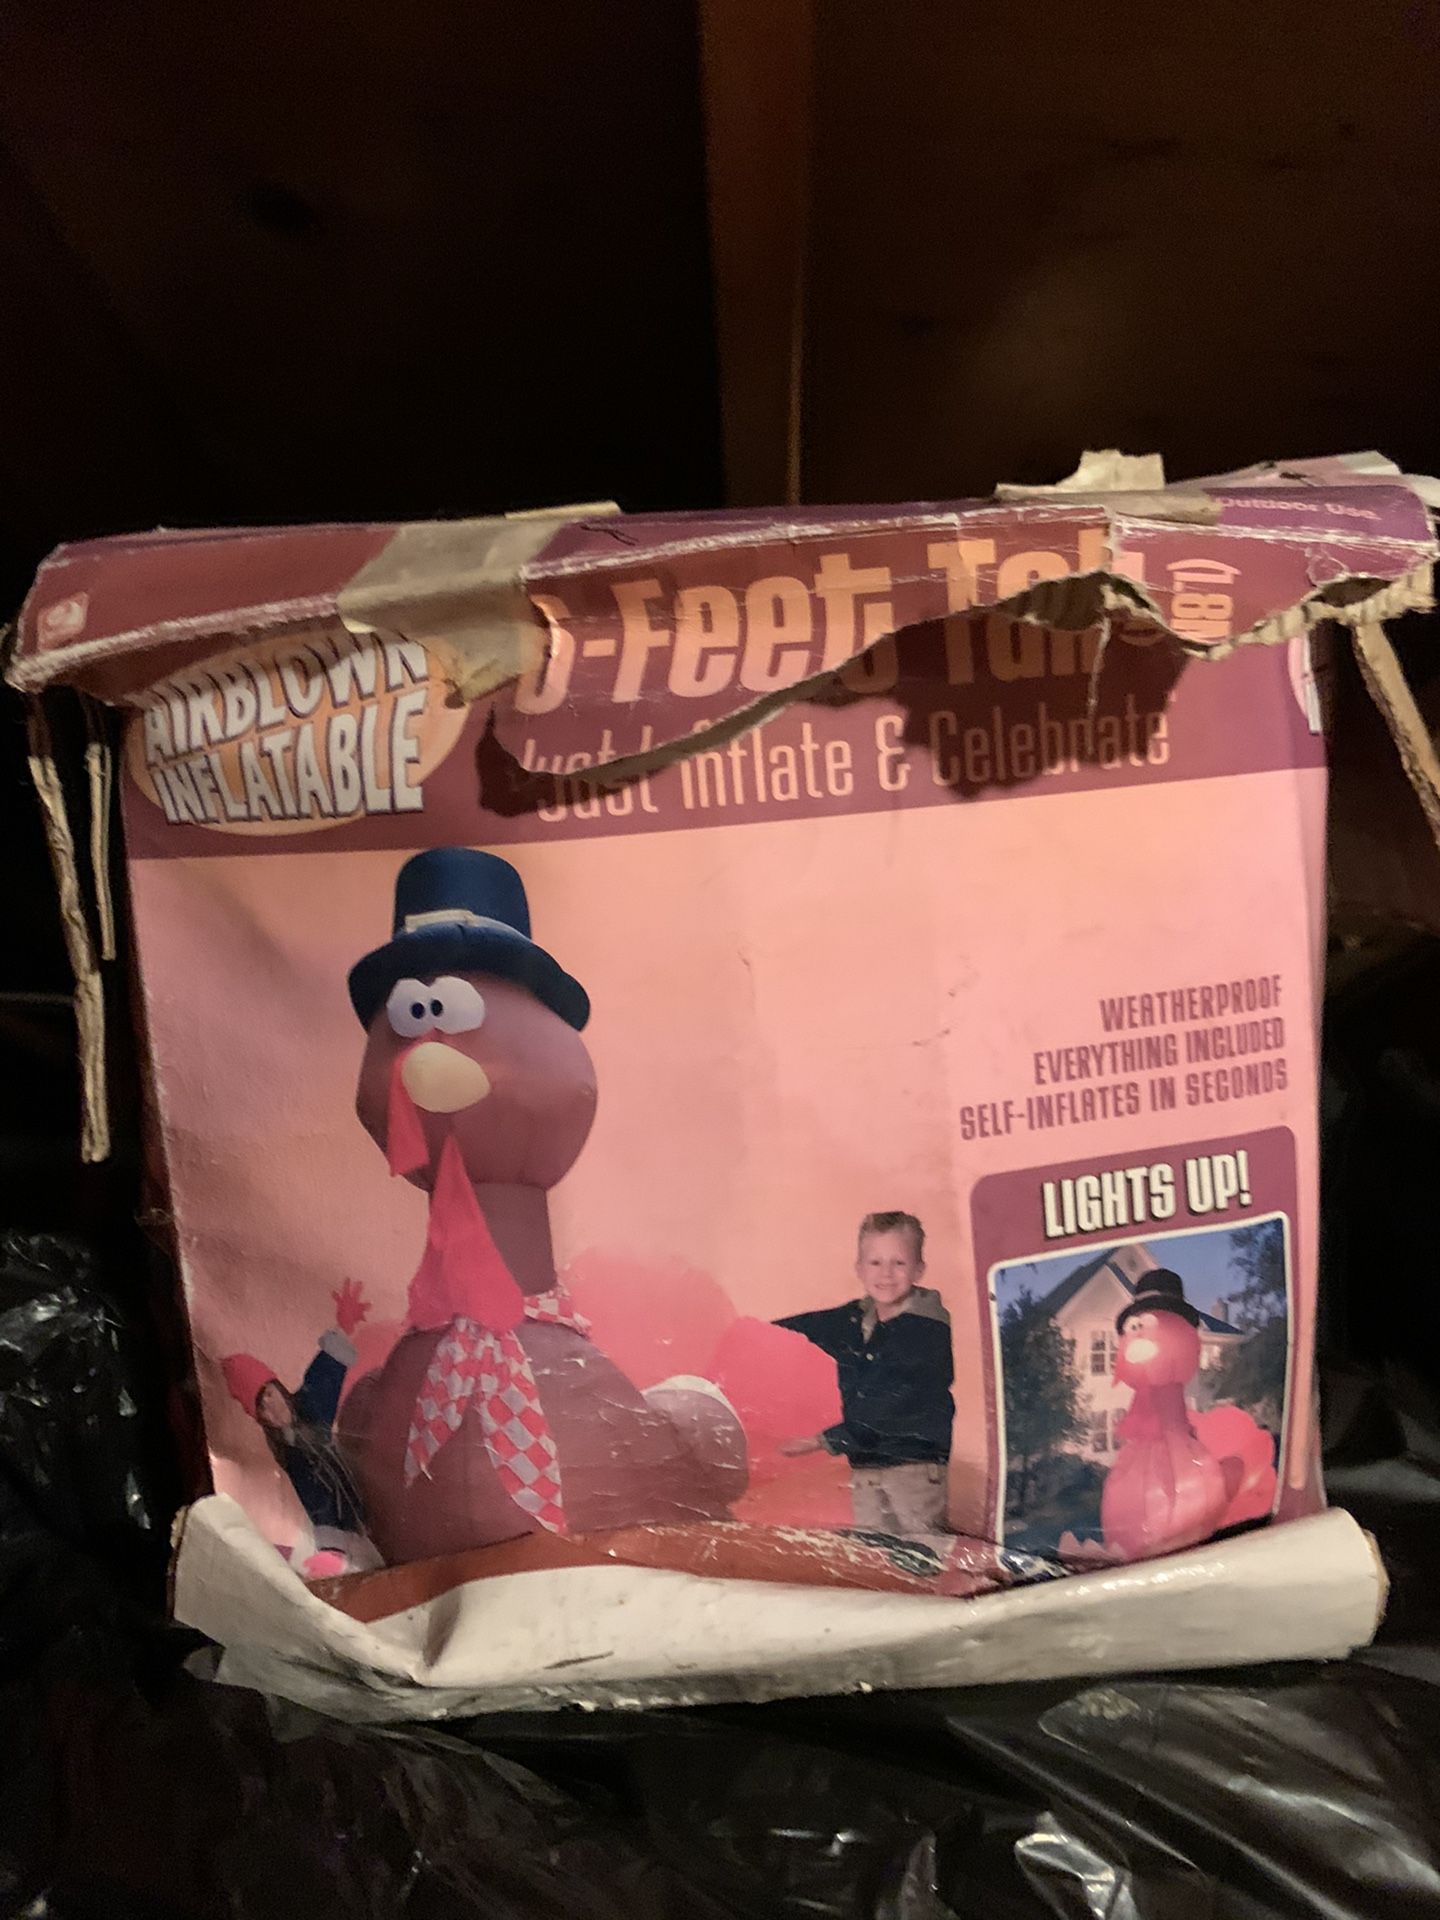 Inflatable turkey